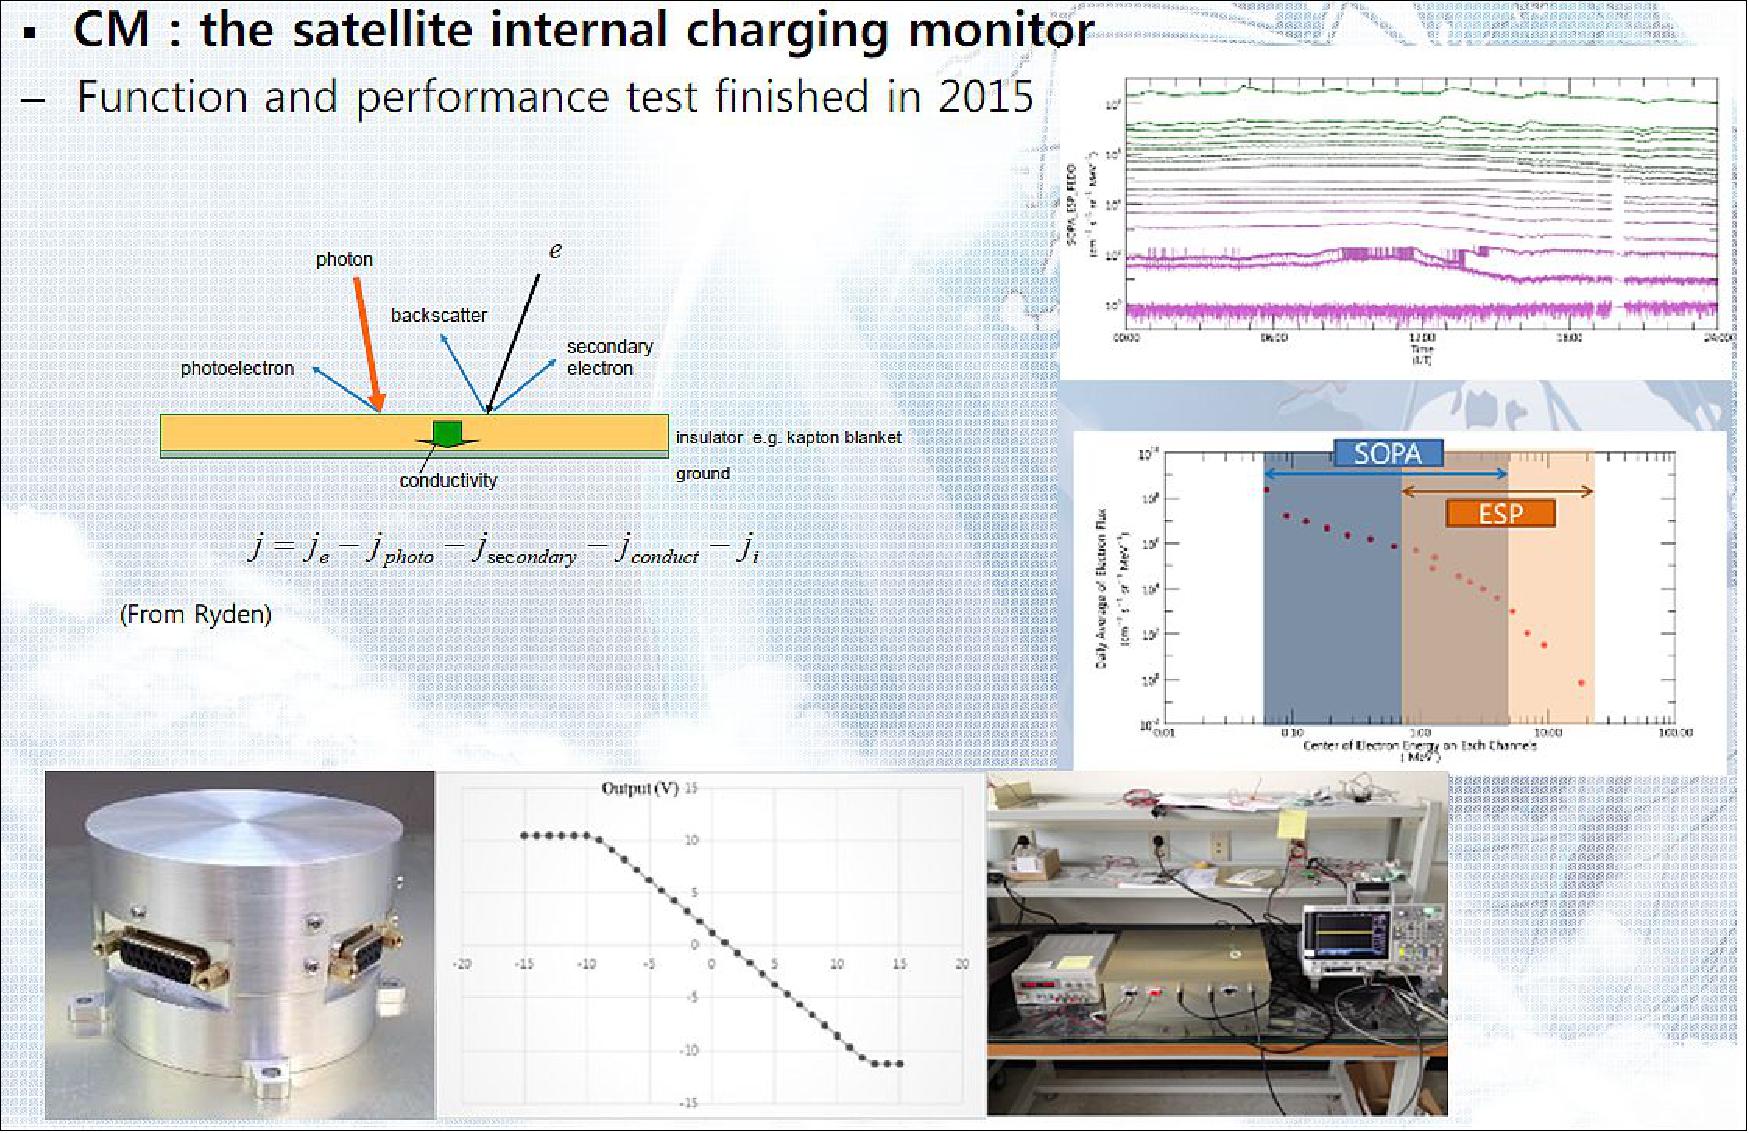 Figure 26: KSEM Charging Monitor (image credit: KSEM Team)